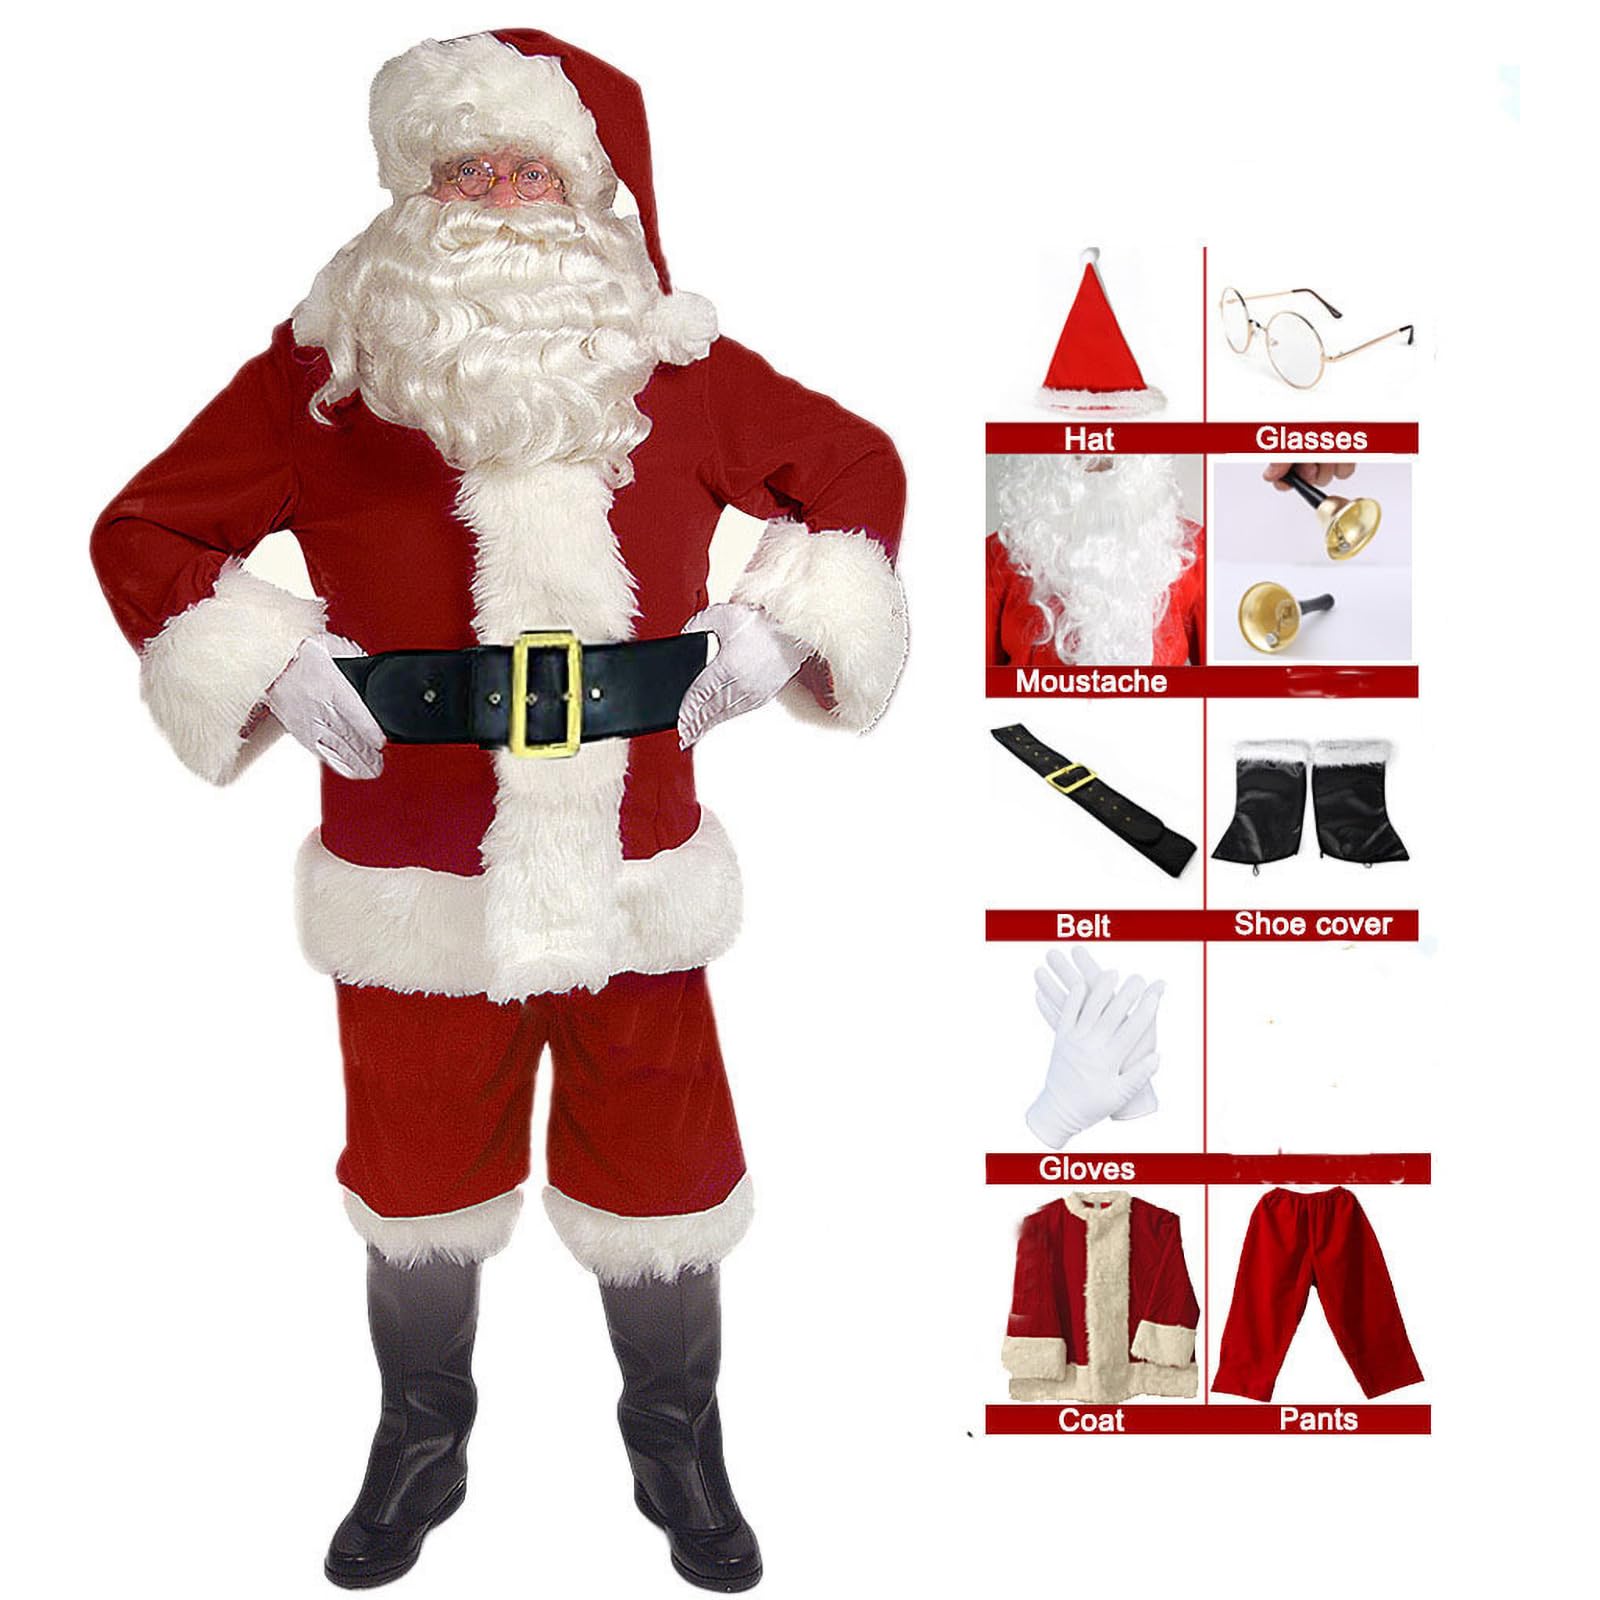 EXQUILEG Weihnachtsmann Kostüm für Herren, Weihnachtsmannkostüm mit Mütze Bart Gürtel und Handschuhe - Weihnachtskostüm Nikolauskostüm Weihnachtskostüme Kostüme (9-Teiliges,S)